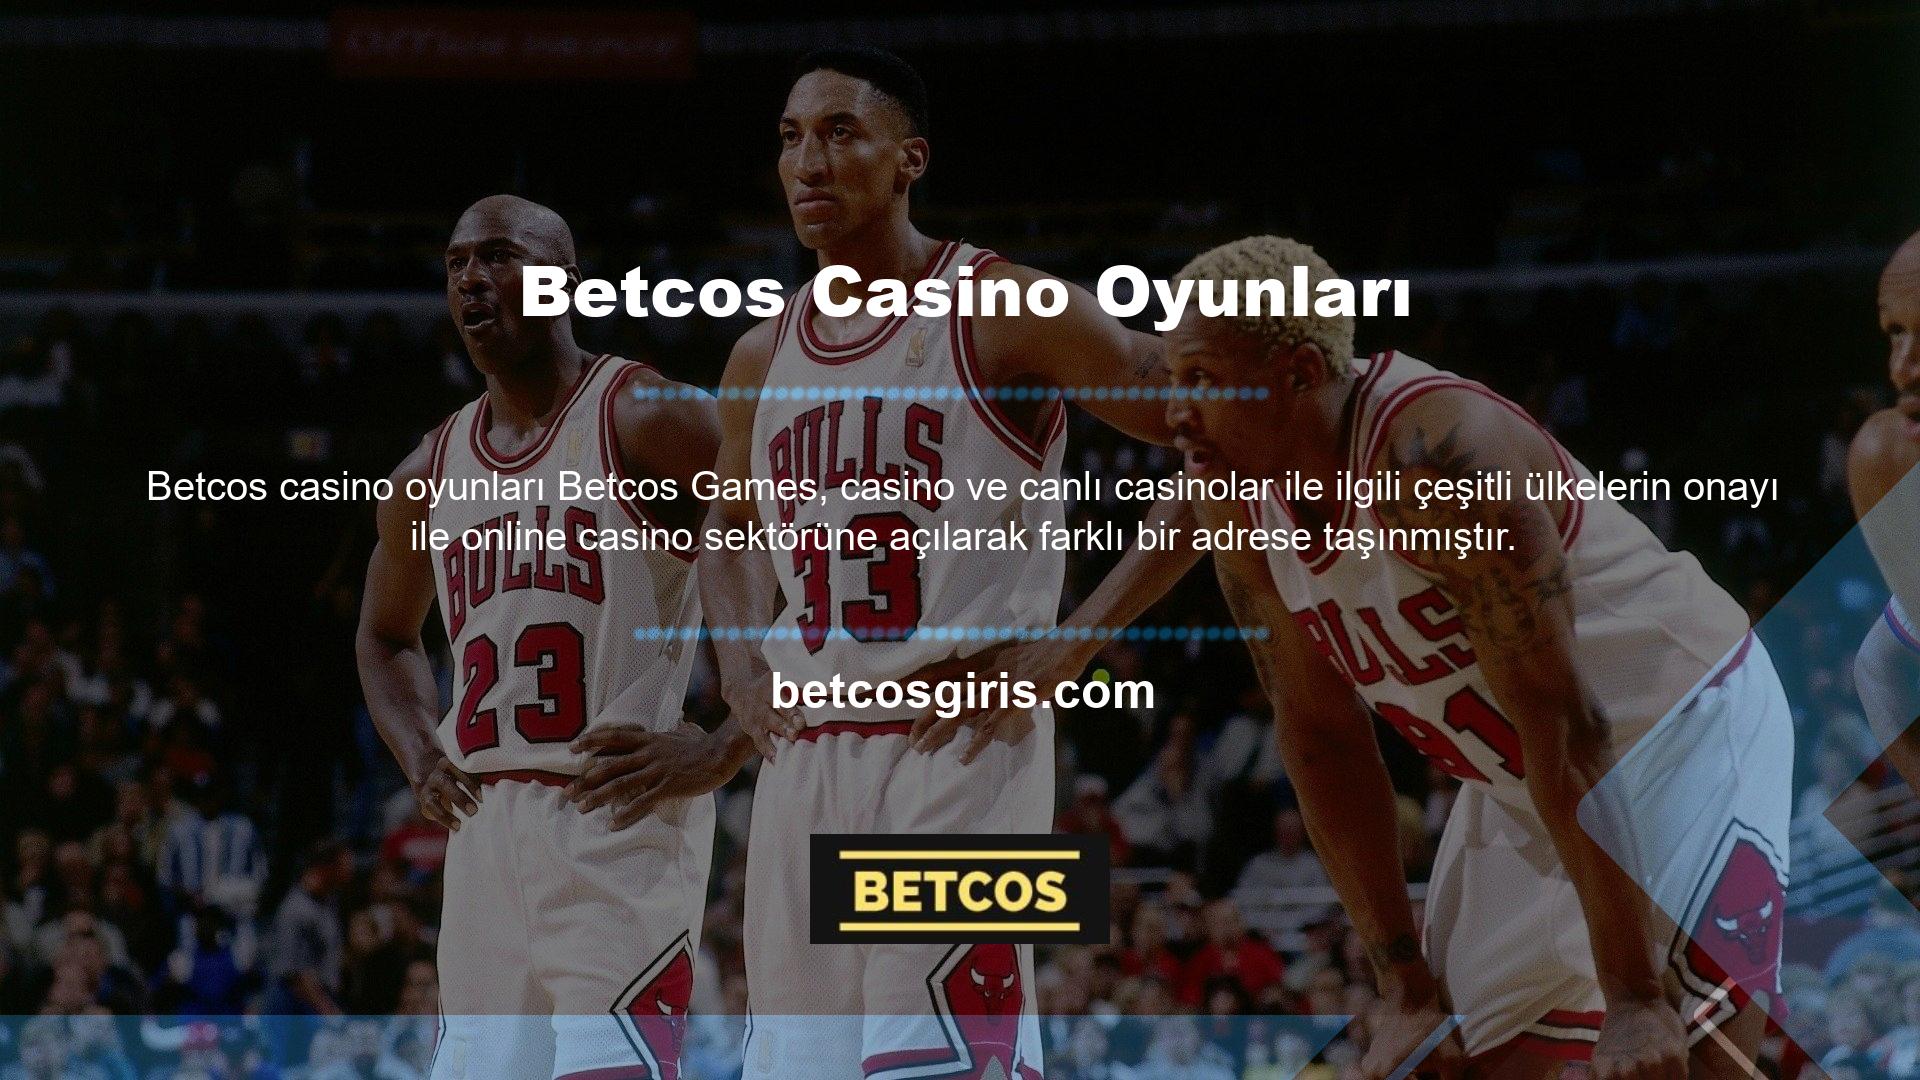 BTK ölçülerindeki bu değişiklikten dolayı yeni site olarak Betcos belirlenmiştir